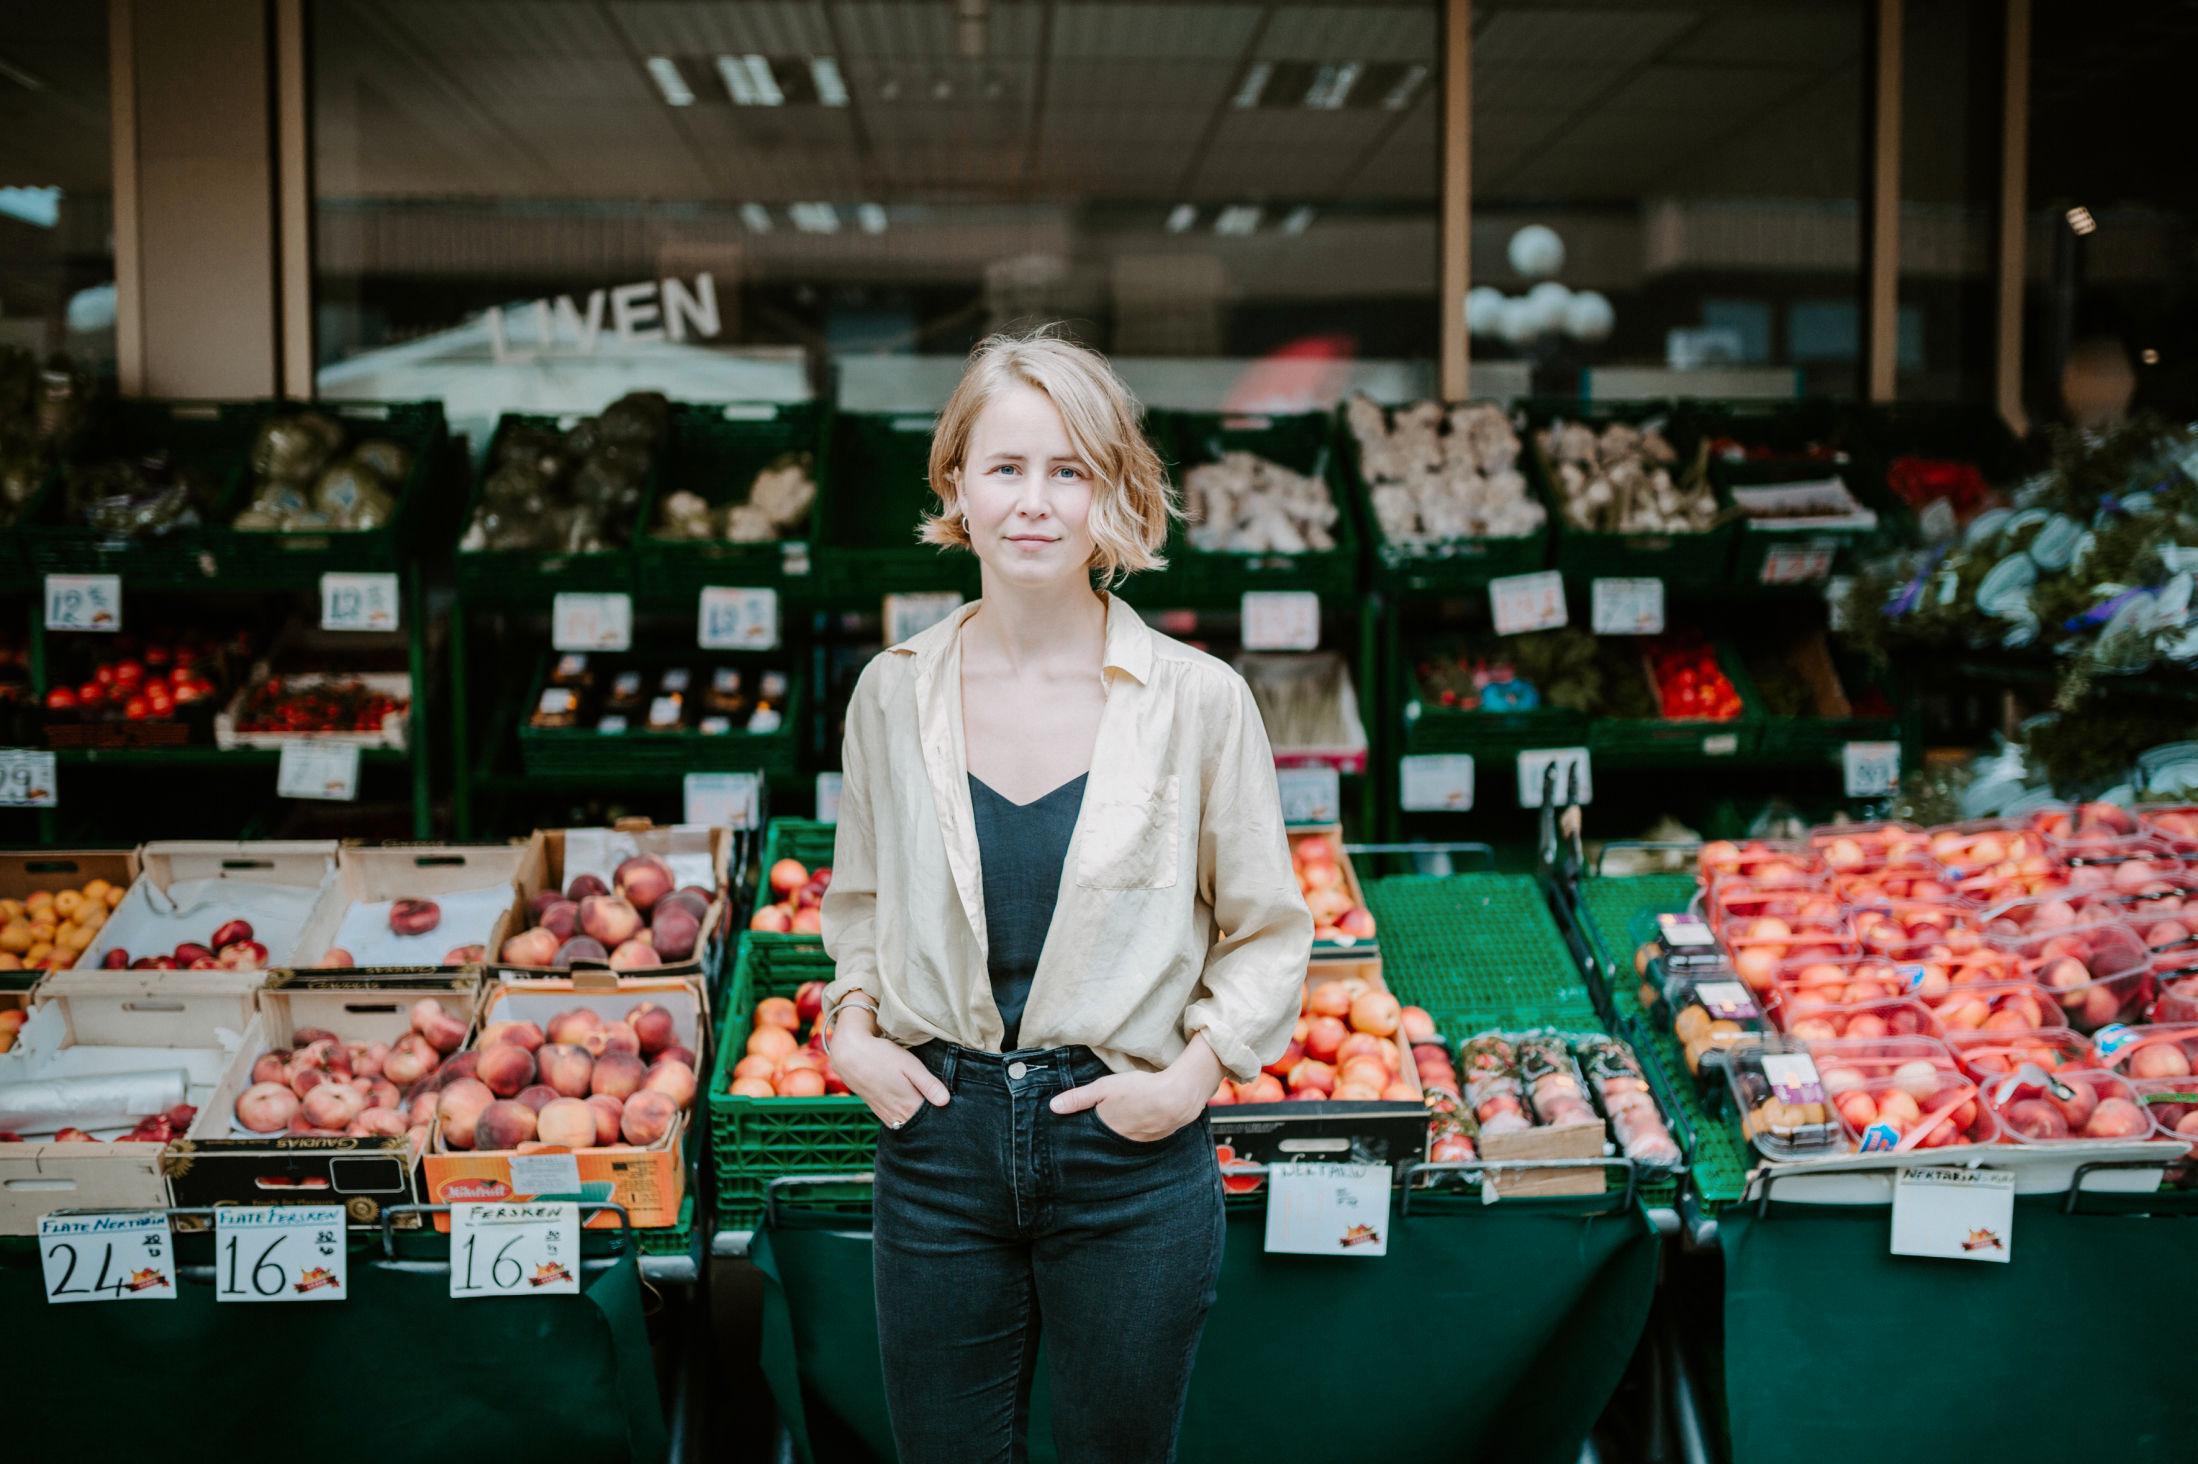 MILJØLEDER: Anja Bakken Riise, leder for Framtiden i våre hender, kan fortelle at blant annet frukt, grønt, makrell og sild kommer bra ut i miljøregnskapet. Foto: Renate Madsen